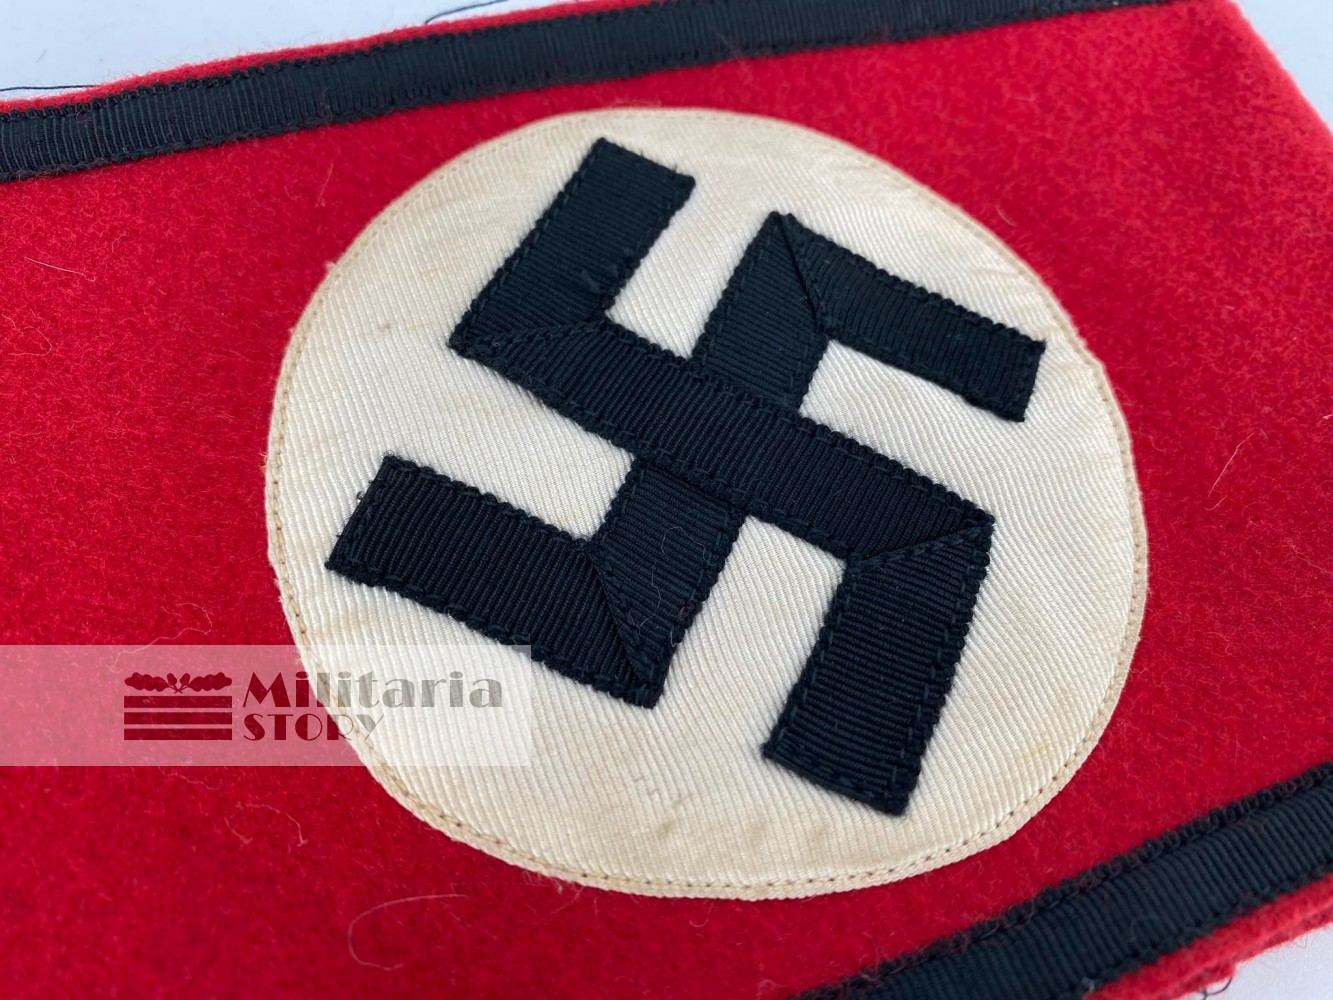 Allgemeine SS red armband - Allgemeine SS red armband: Vintage German Insignia